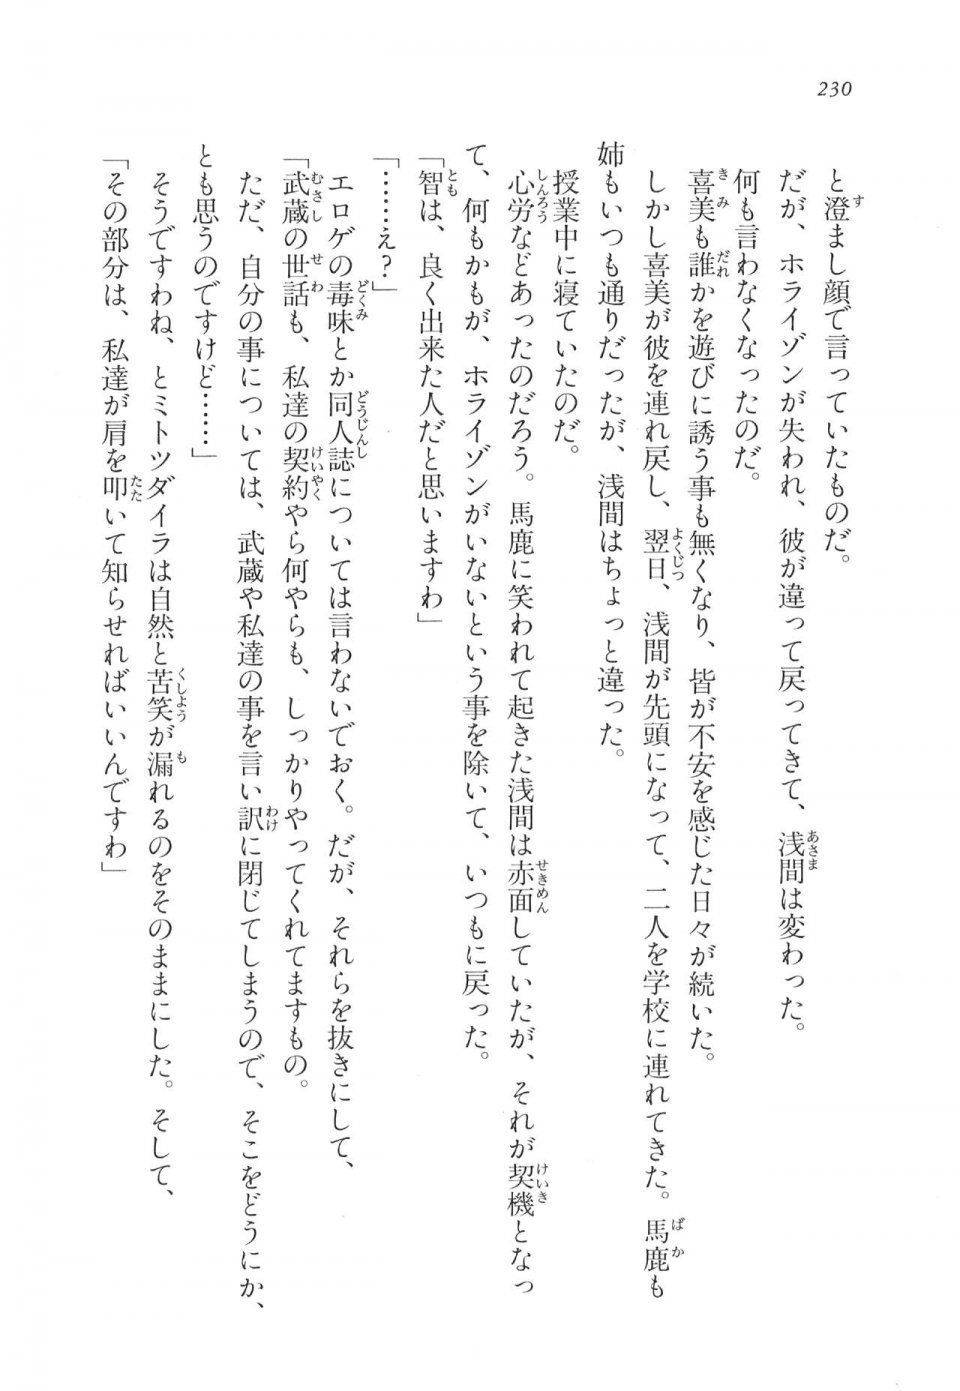 Kyoukai Senjou no Horizon LN Vol 11(5A) - Photo #230